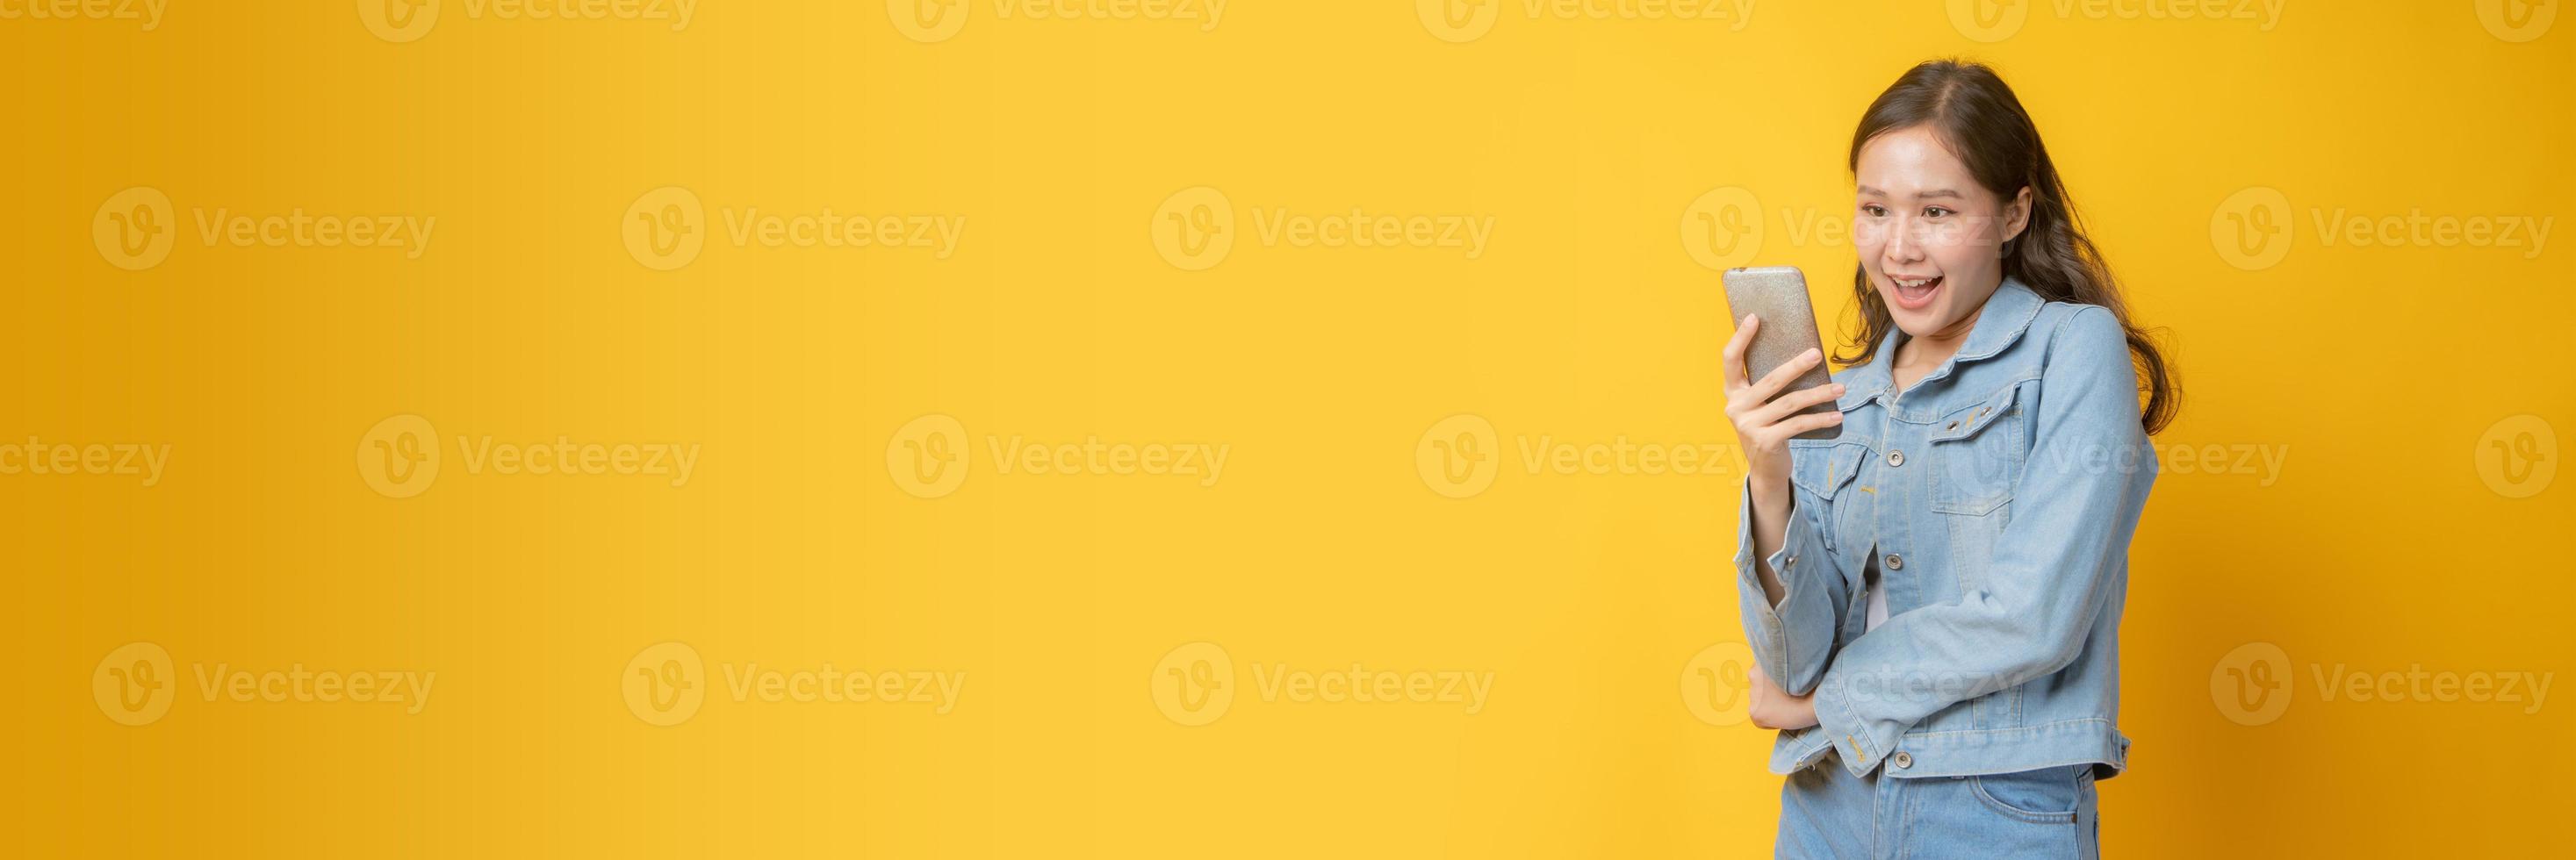 mulher asiática sorrindo e olhando para o celular no fundo amarelo foto